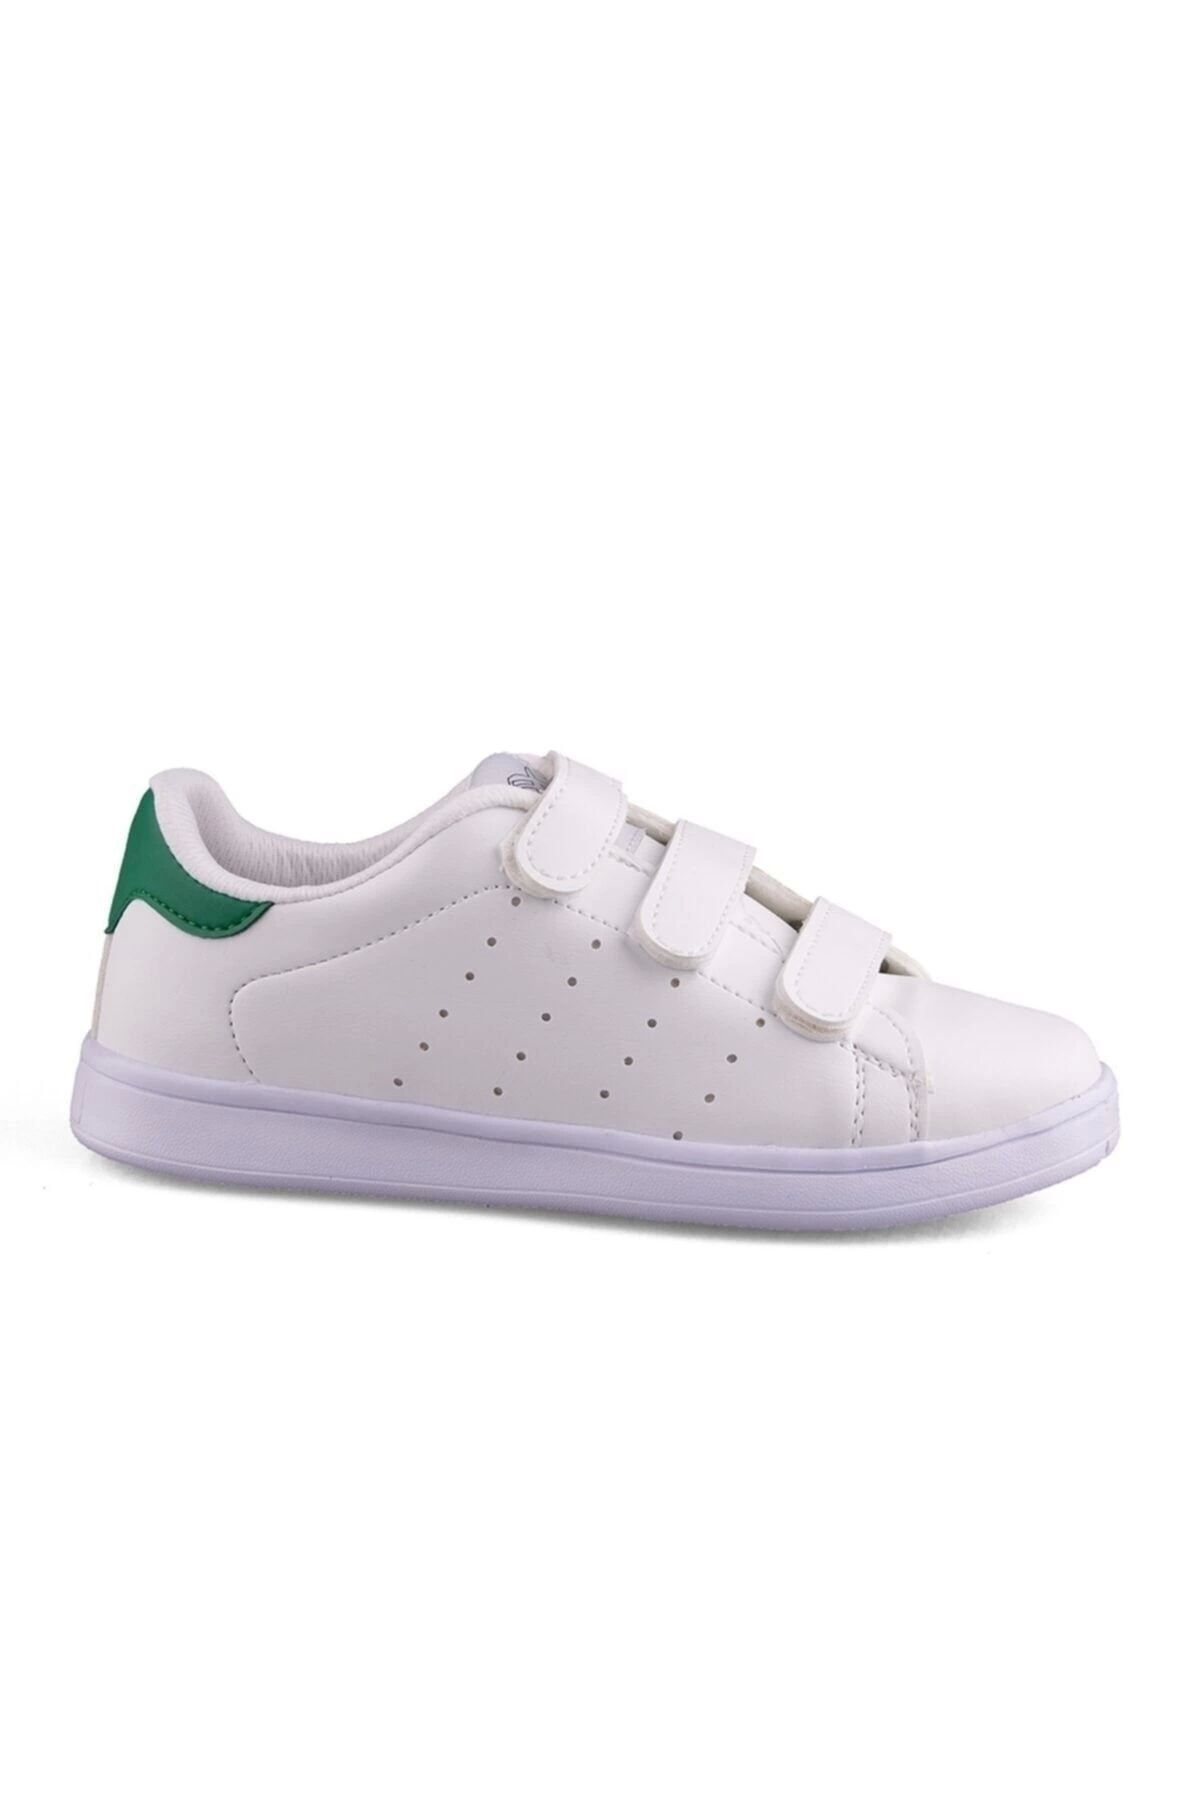 Venuma 660-1 Genç Beyaz Bantlı Unisex Sneaker Günlük Spor Ayakkabı